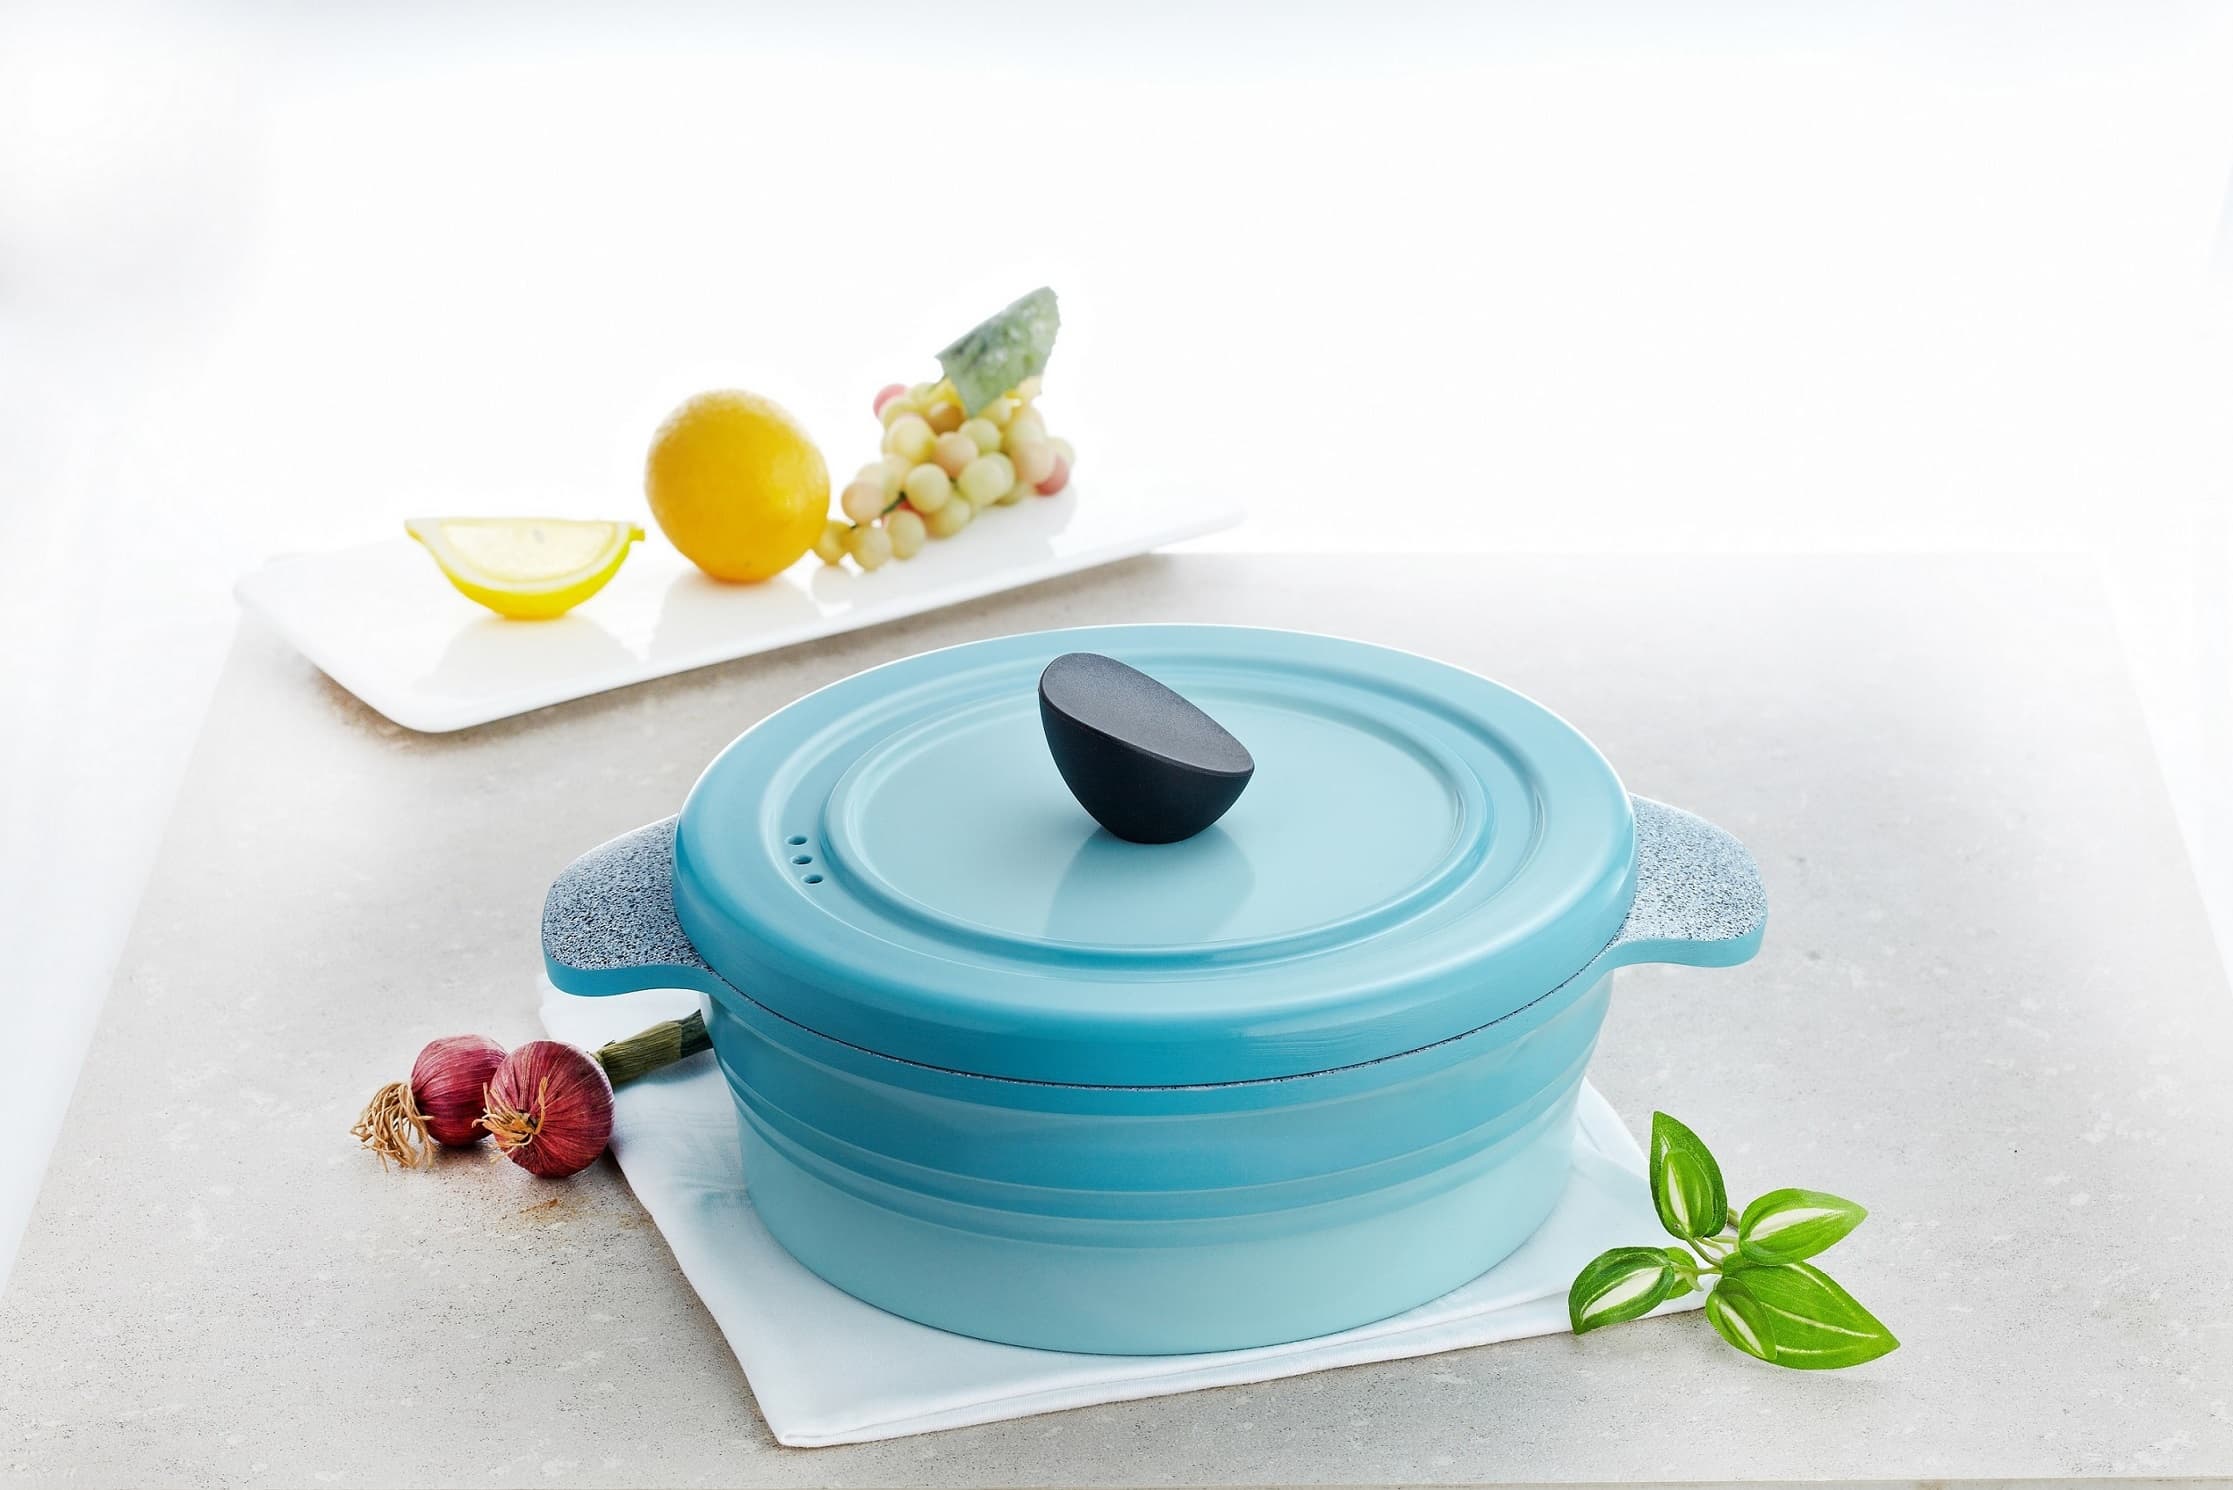 Ceramic non-stick coating pot